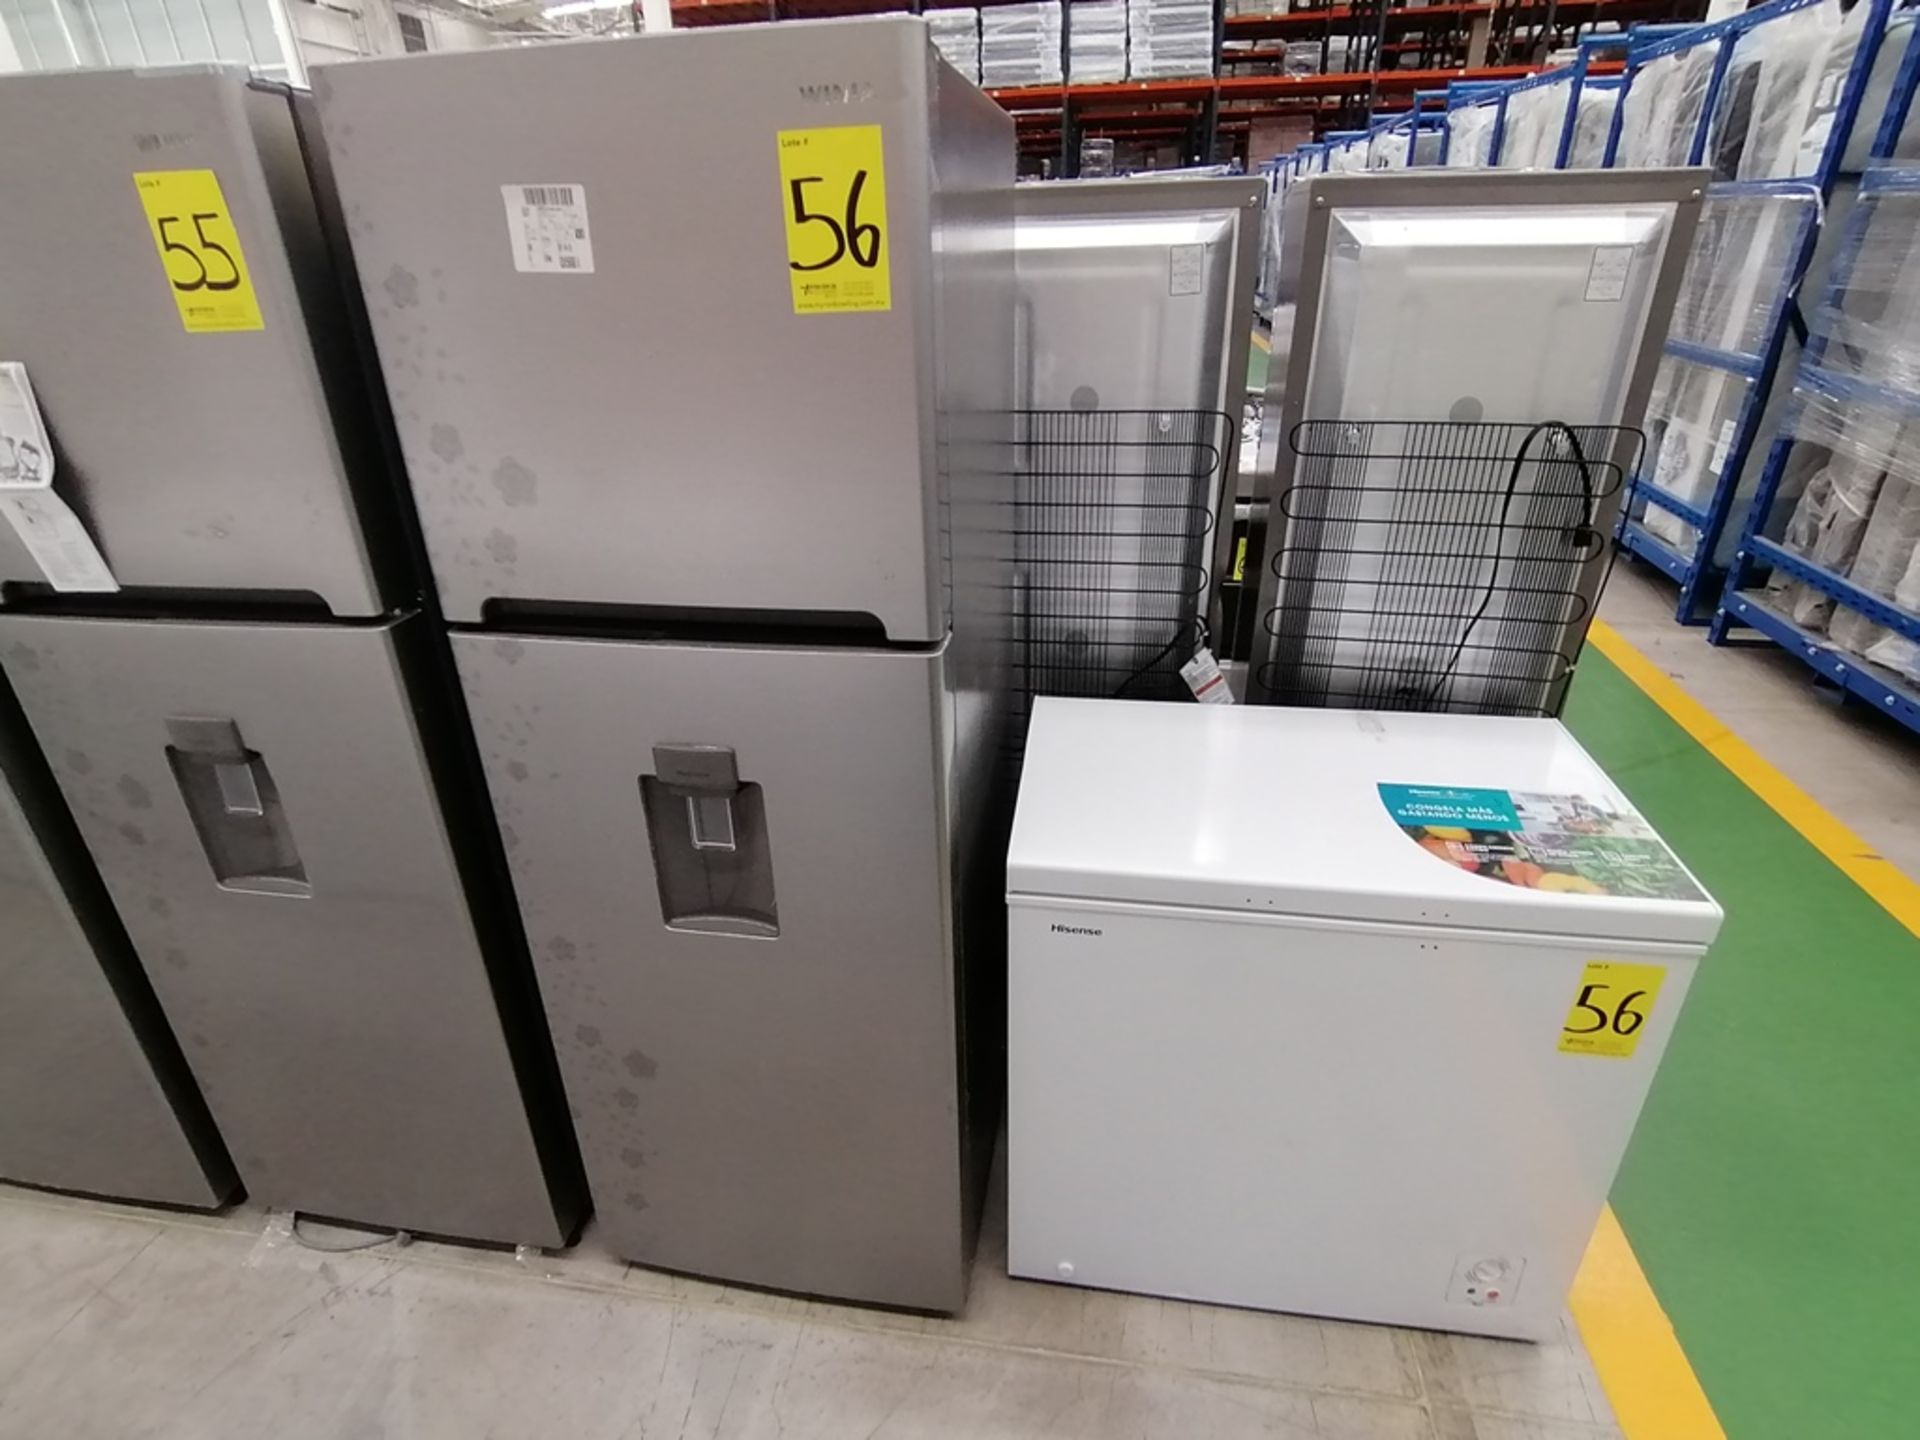 Lote de 2 refrigeradores incluye: 1 Refrigerador con dispensador de agua, Marca Winia, Modelo DFR40 - Image 3 of 17